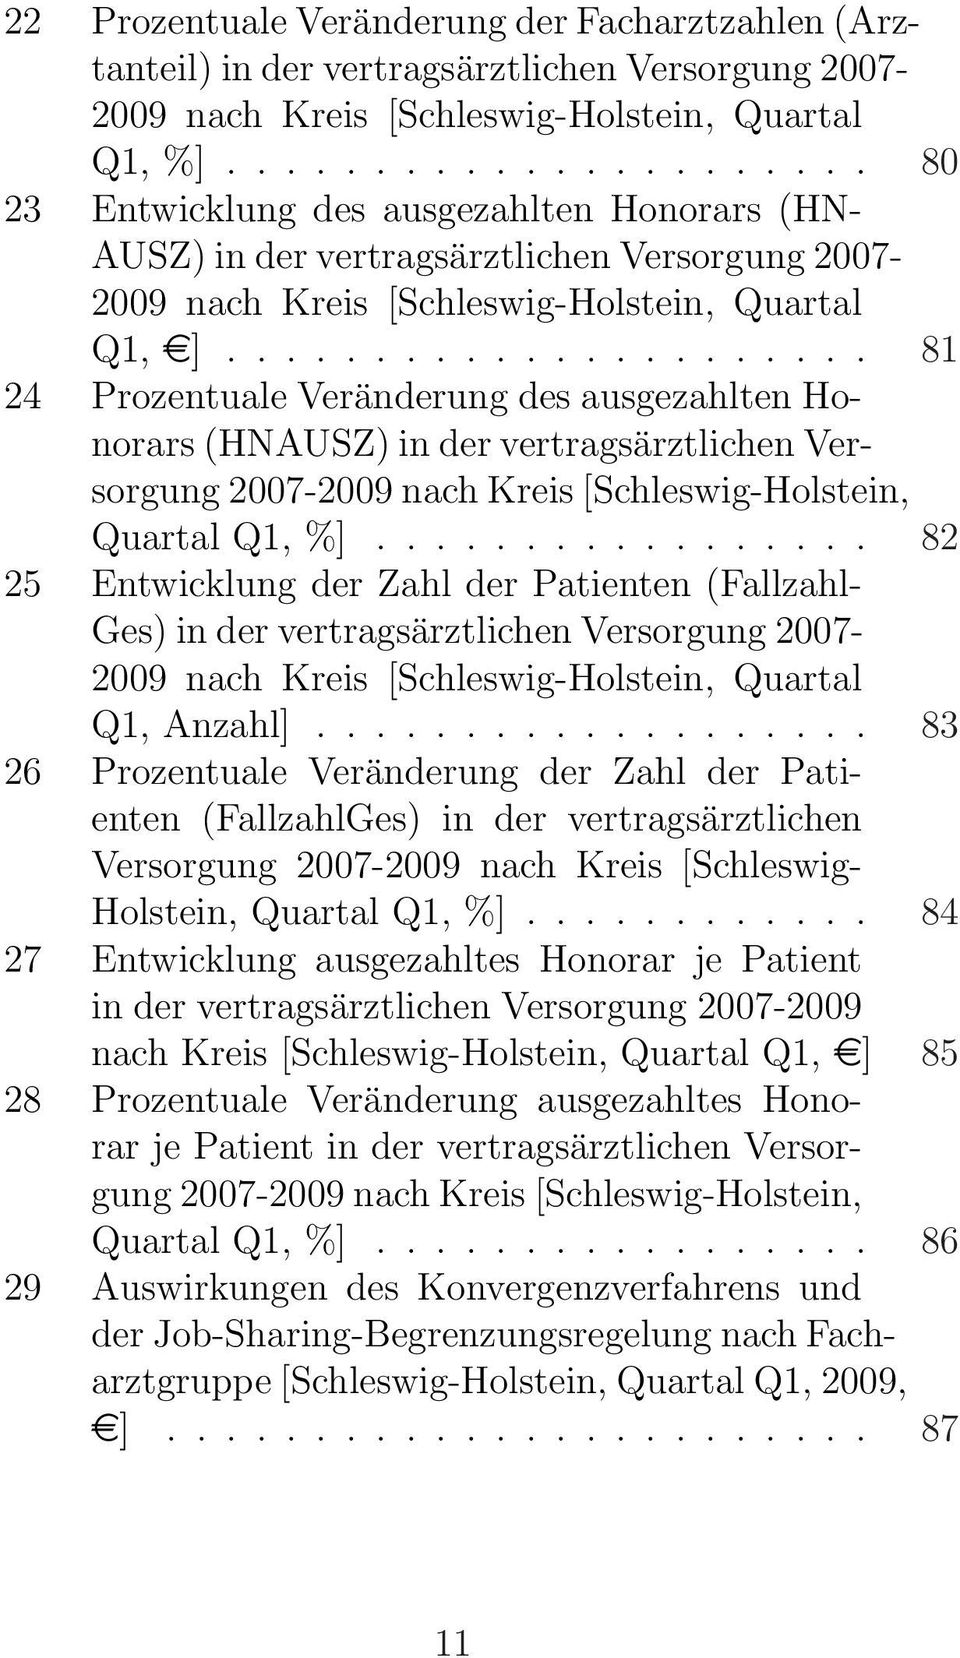 ..................... 81 24 Prozentuale Veränderung des ausgezahlten Honorars (HNAUSZ) in der vertragsärztlichen Versorgung 2007-2009 nach Kreis [Schleswig-Holstein, Quartal Q1, %].